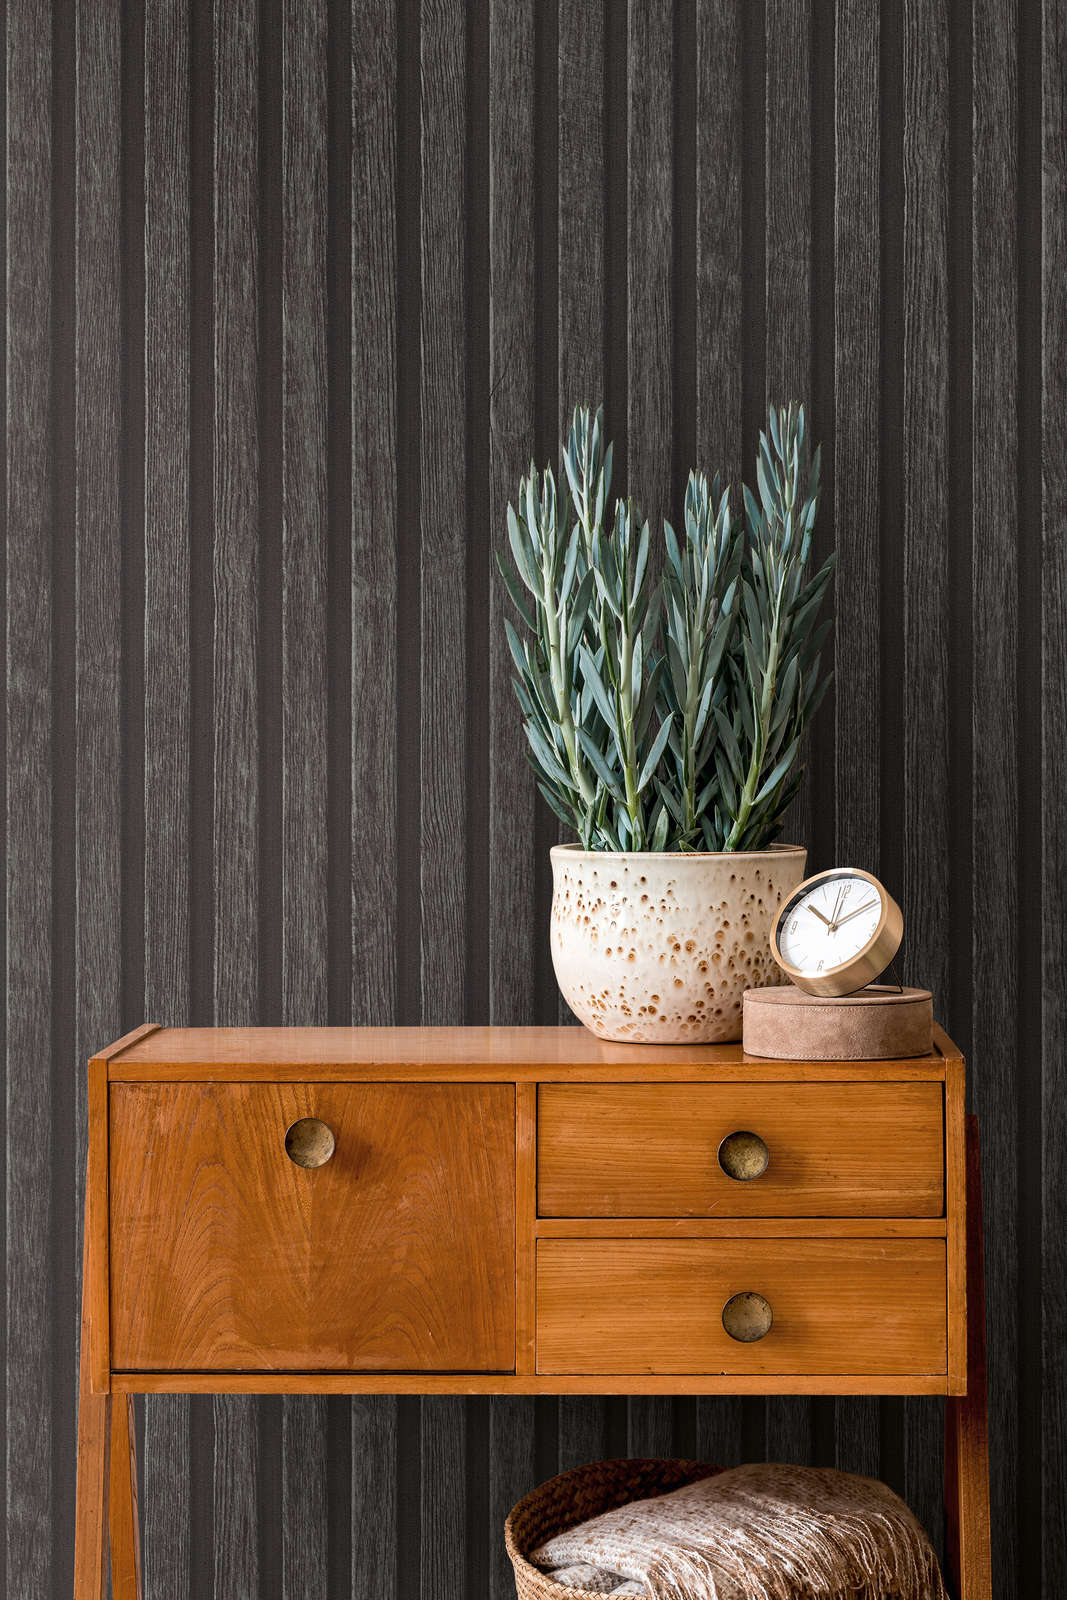             Papel pintado de efecto madera con patrón de paneles - negro, marrón
        